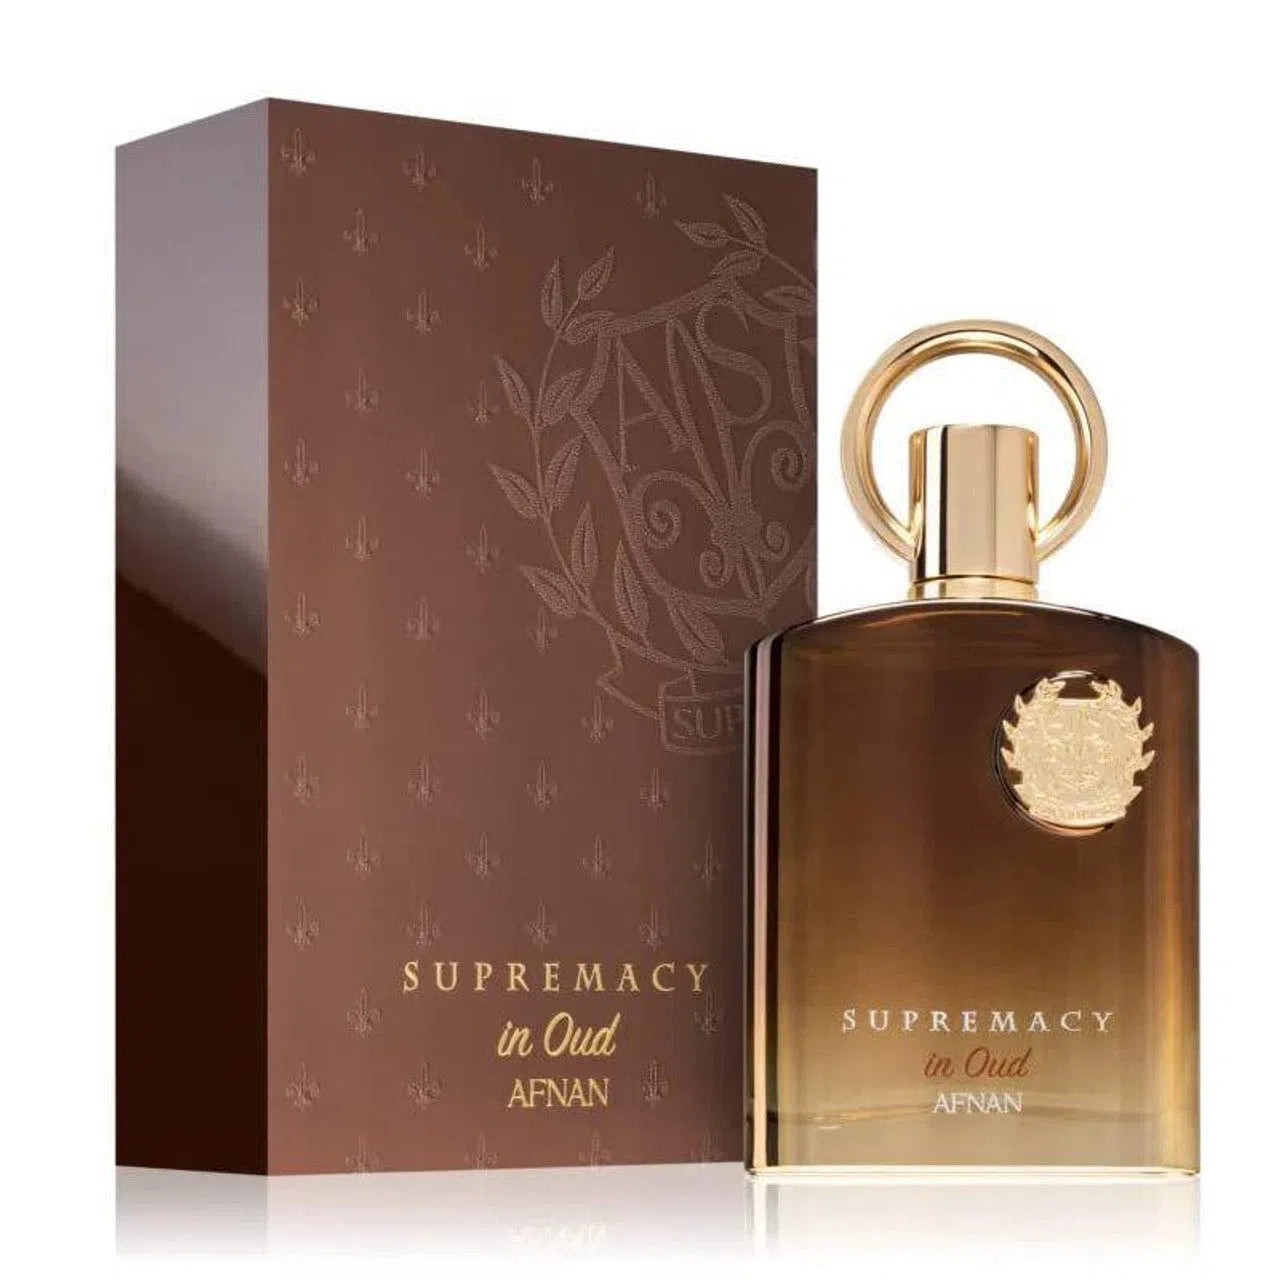 Perfume Afnan Supremacy In Oud Parfum (U) / 150 ml - 6290171072768- Prive Perfumes Honduras